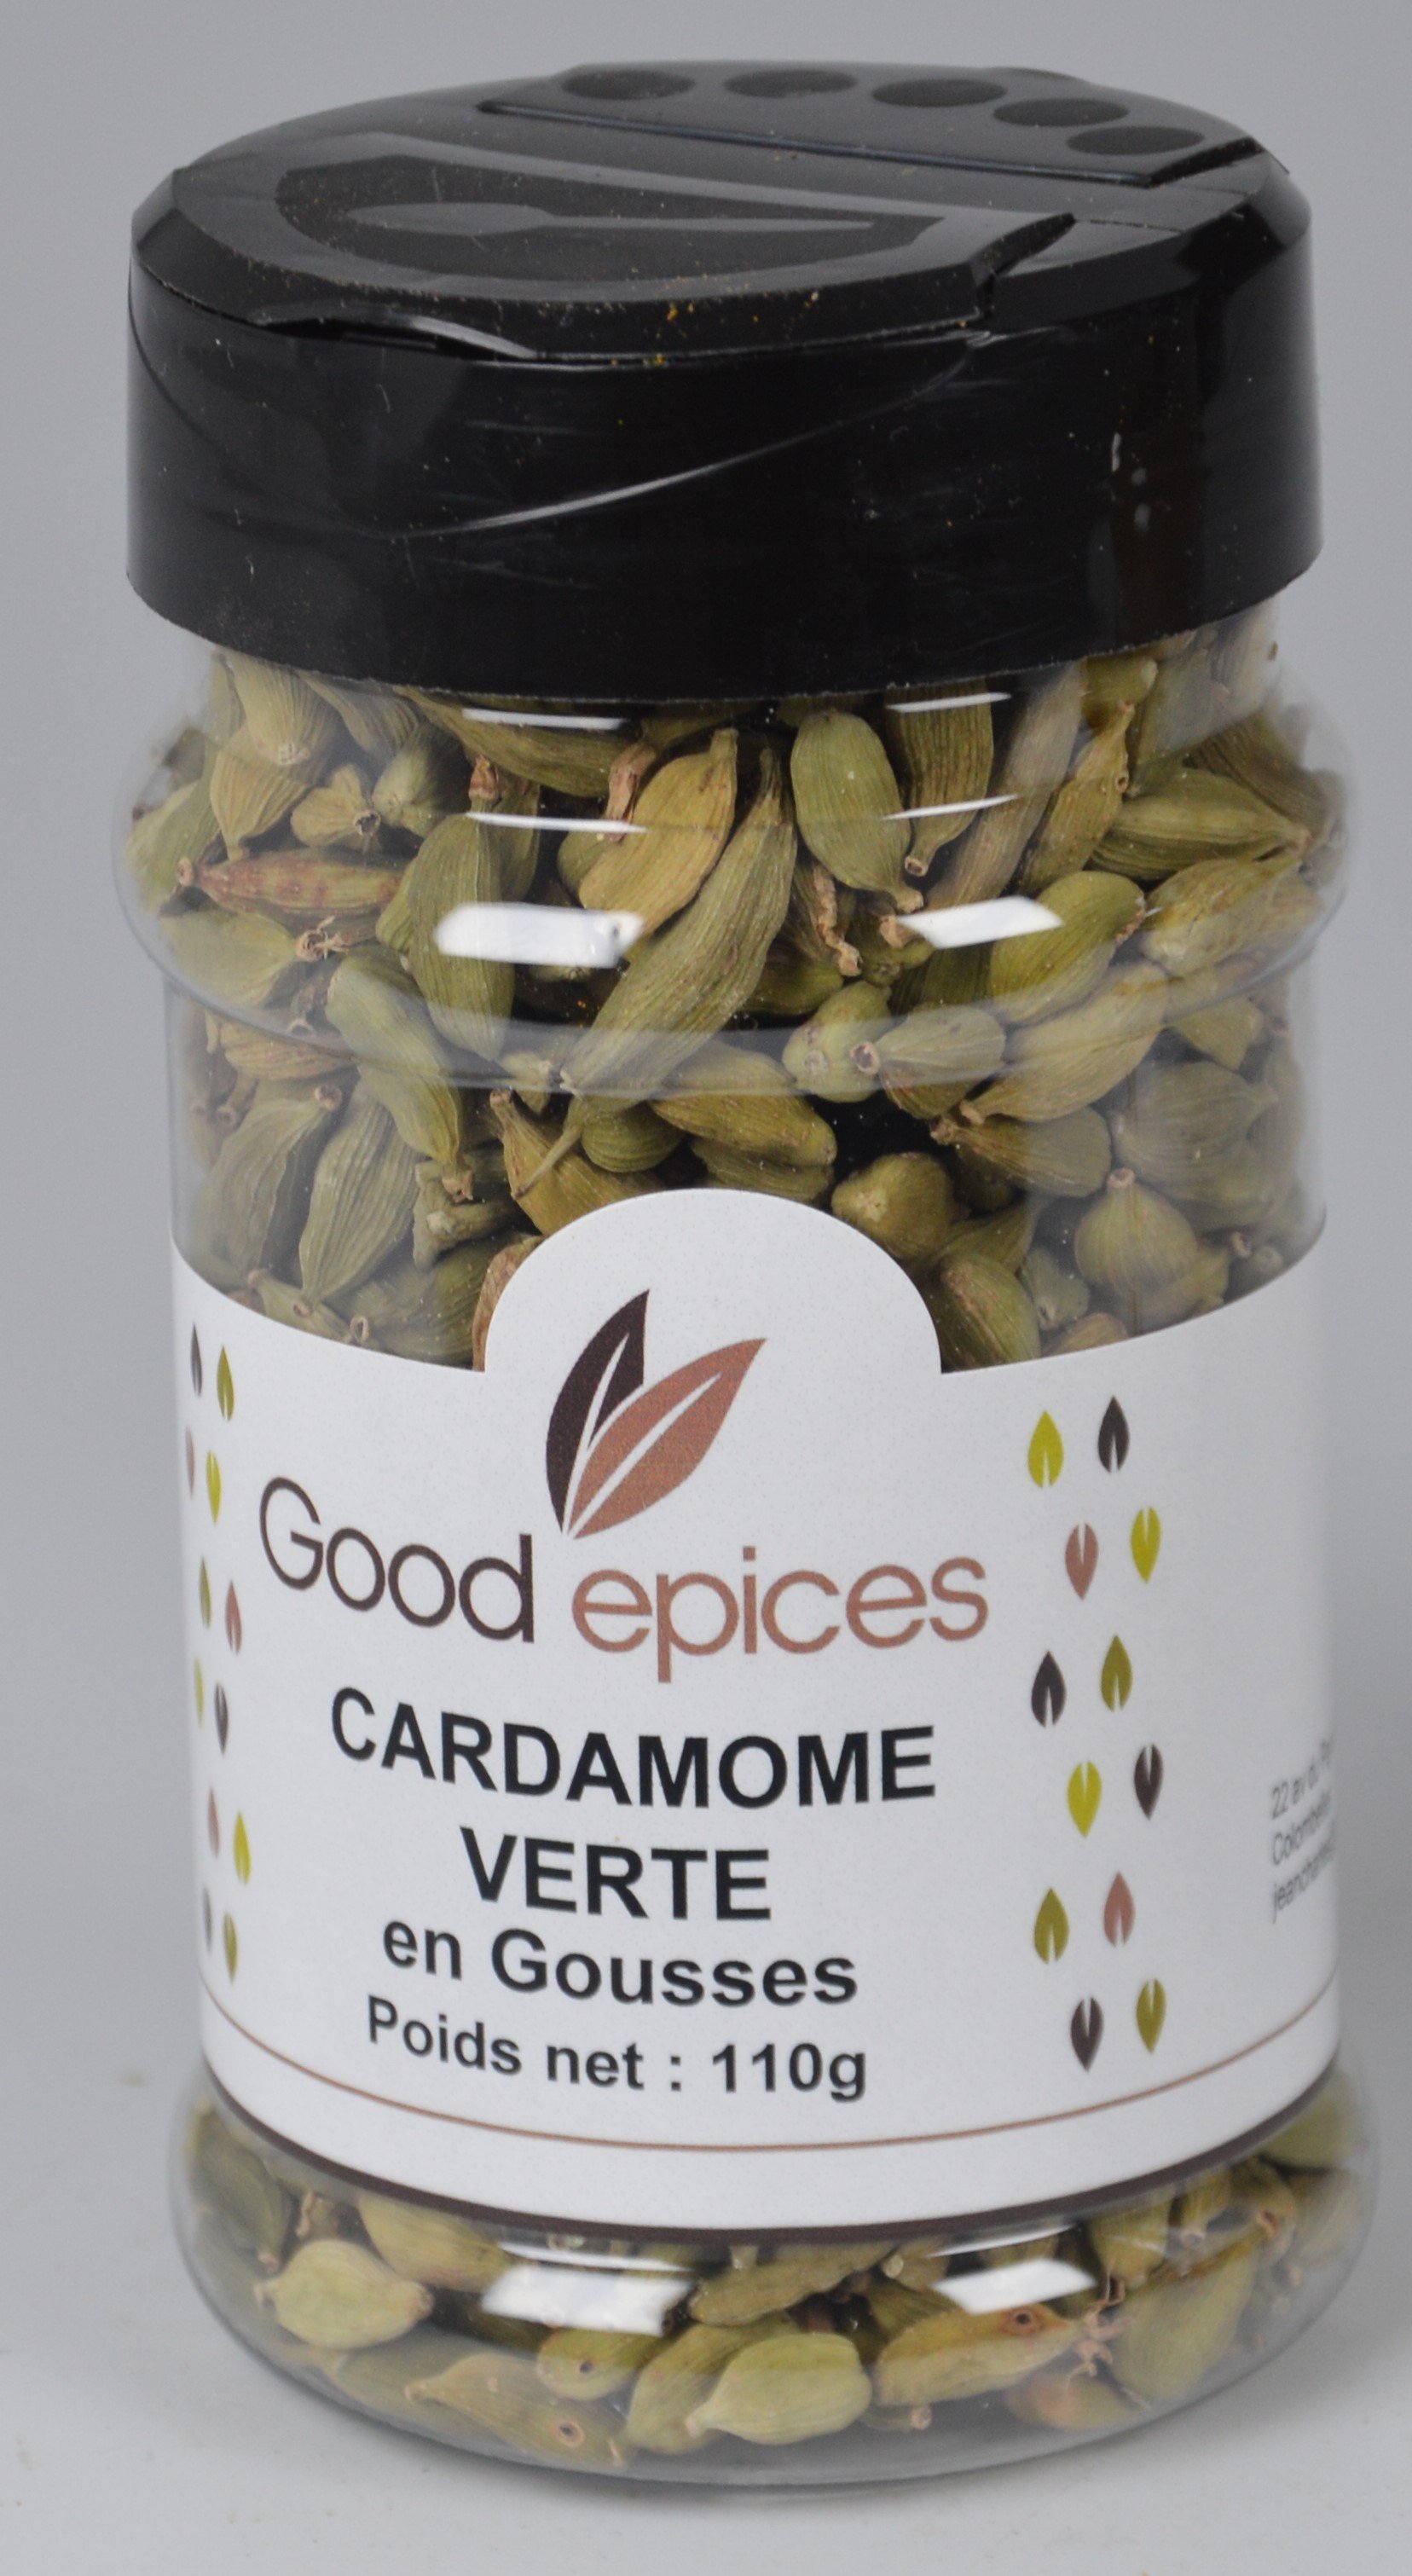 Good épices Cardamome Verte 110gr